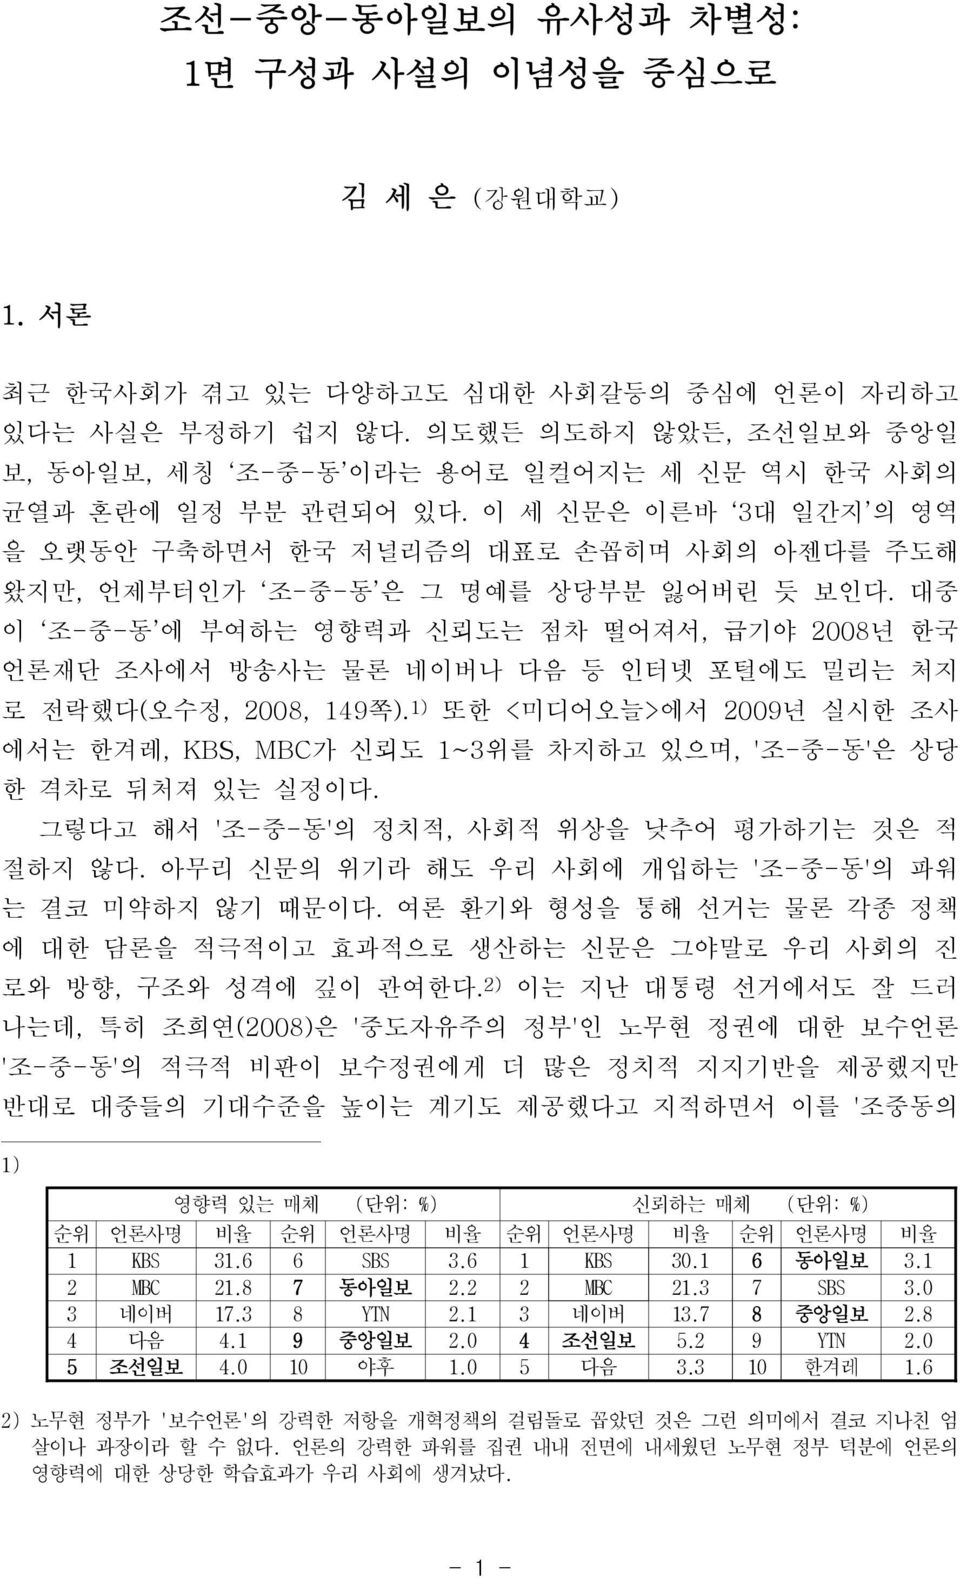 이 세 신문은 이른바 3대 일간지 의 영역 을 오랫동안 구축하면서 한국 저널리즘의 대표로 손꼽히며 사회의 아젠다를 주도해 왔지만, 언제부터인가 조-중-동 은 그 명예를 상당부분 잃어버린 듯 보인다.